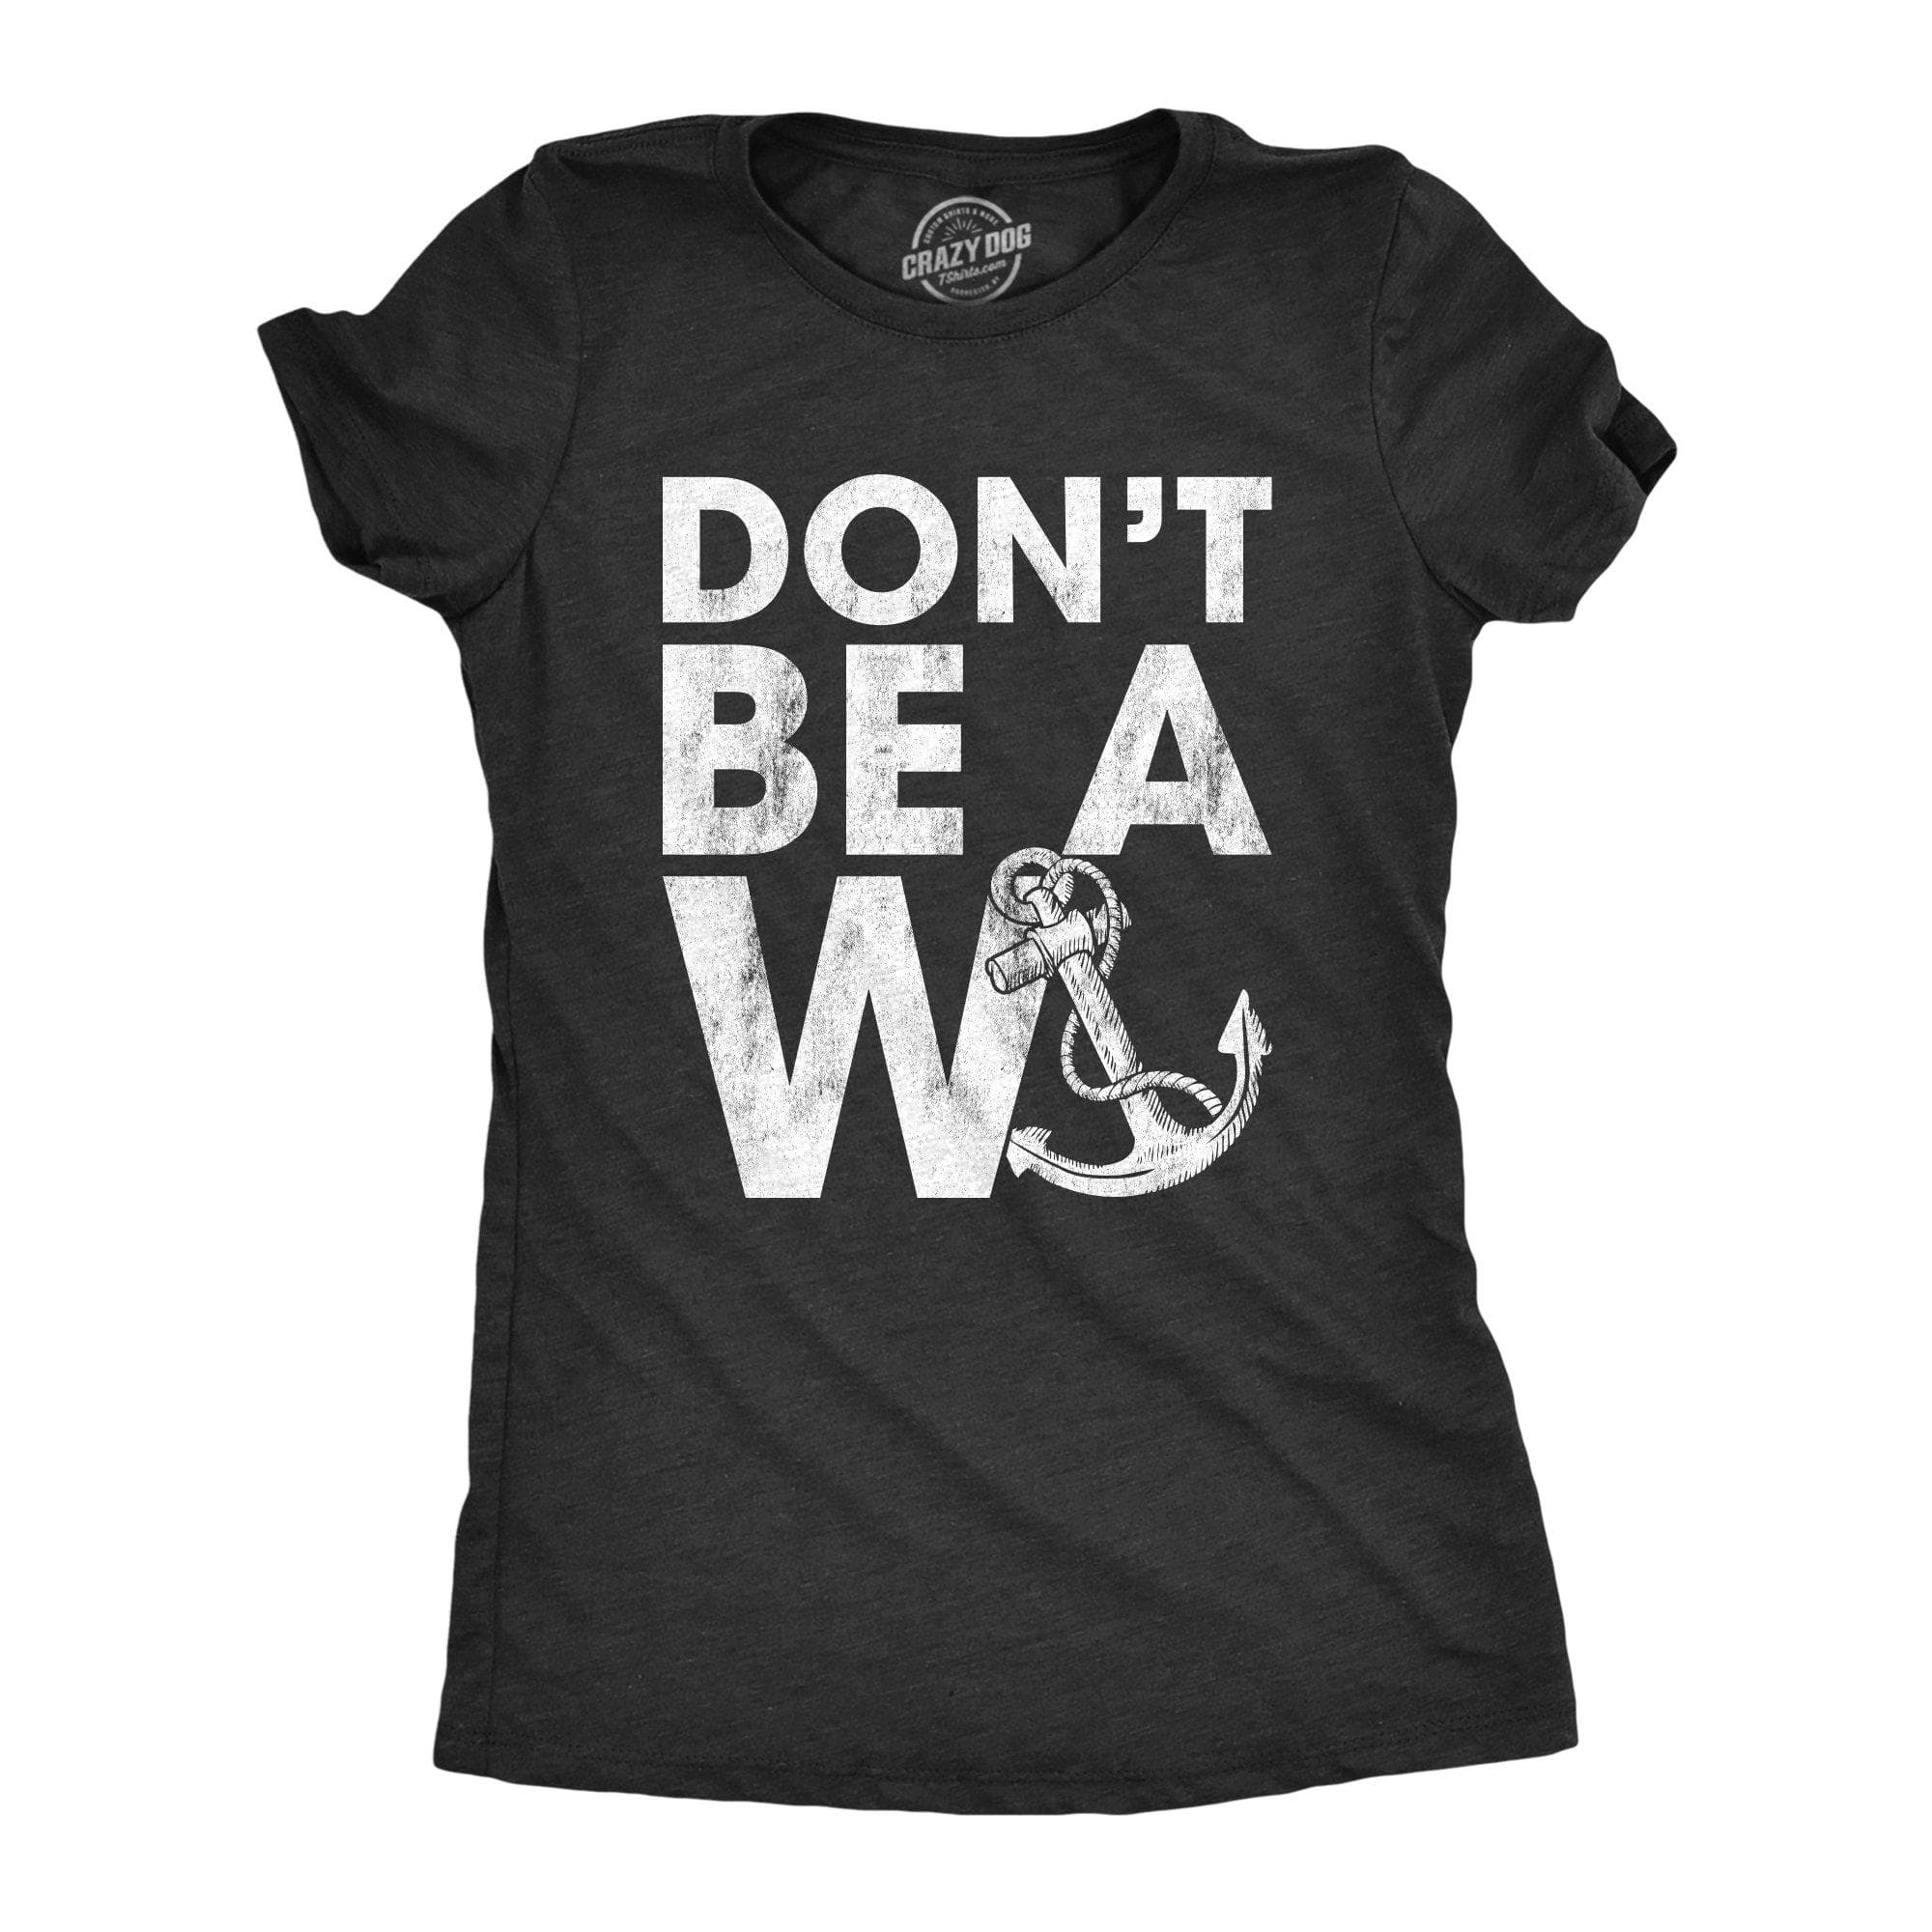 https://cdn.shopify.com/s/files/1/2959/1448/products/crazy-dog-t-shirts-womens-t-shirts-don-t-be-a-wanker-women-s-tshirt-14108100165747_2000x.jpg?v=1621789820